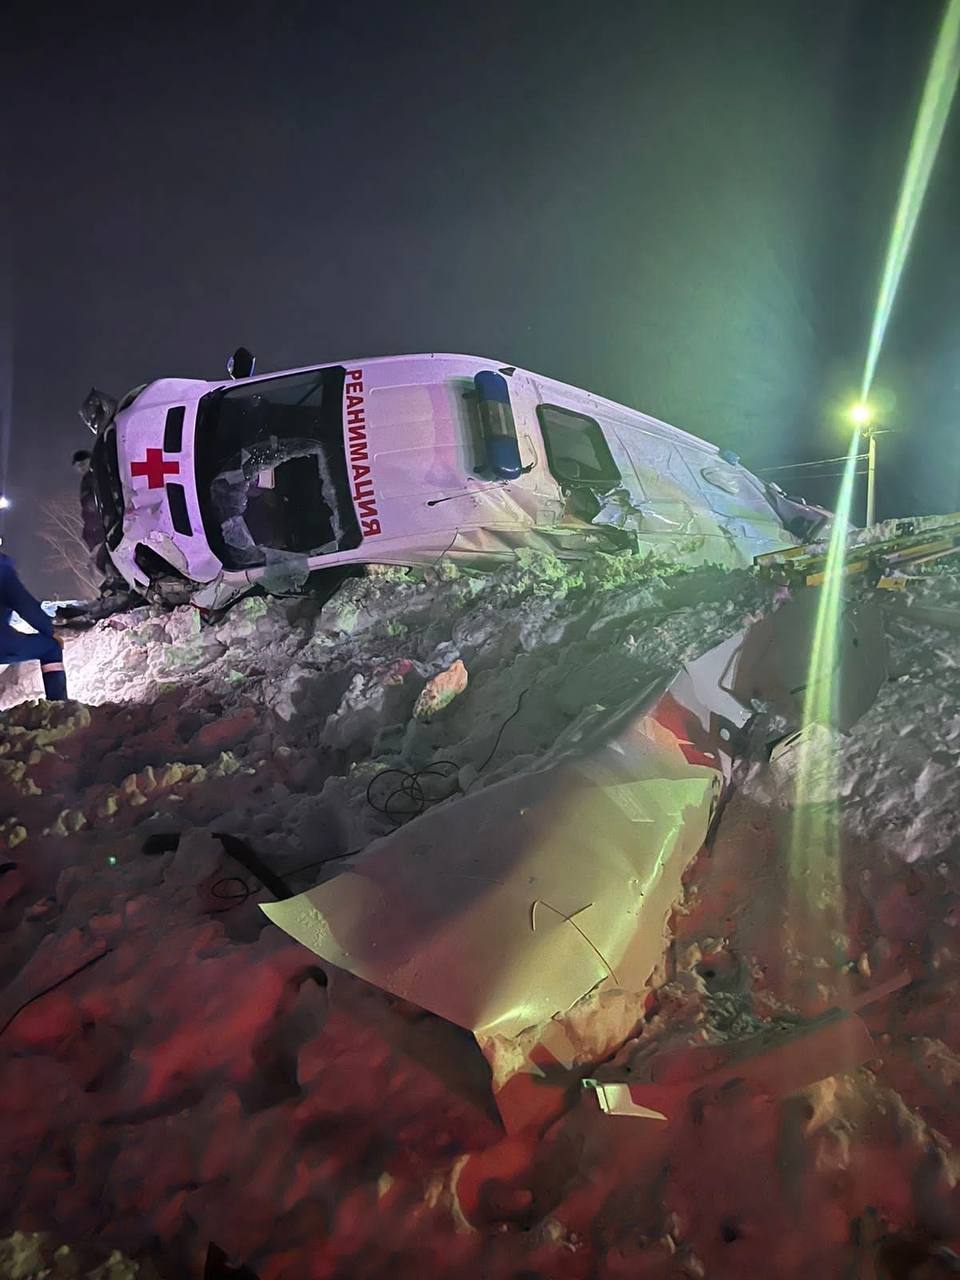 При столкновении локомотива с машиной скорой помощи погиб пациент и пострадали медработники